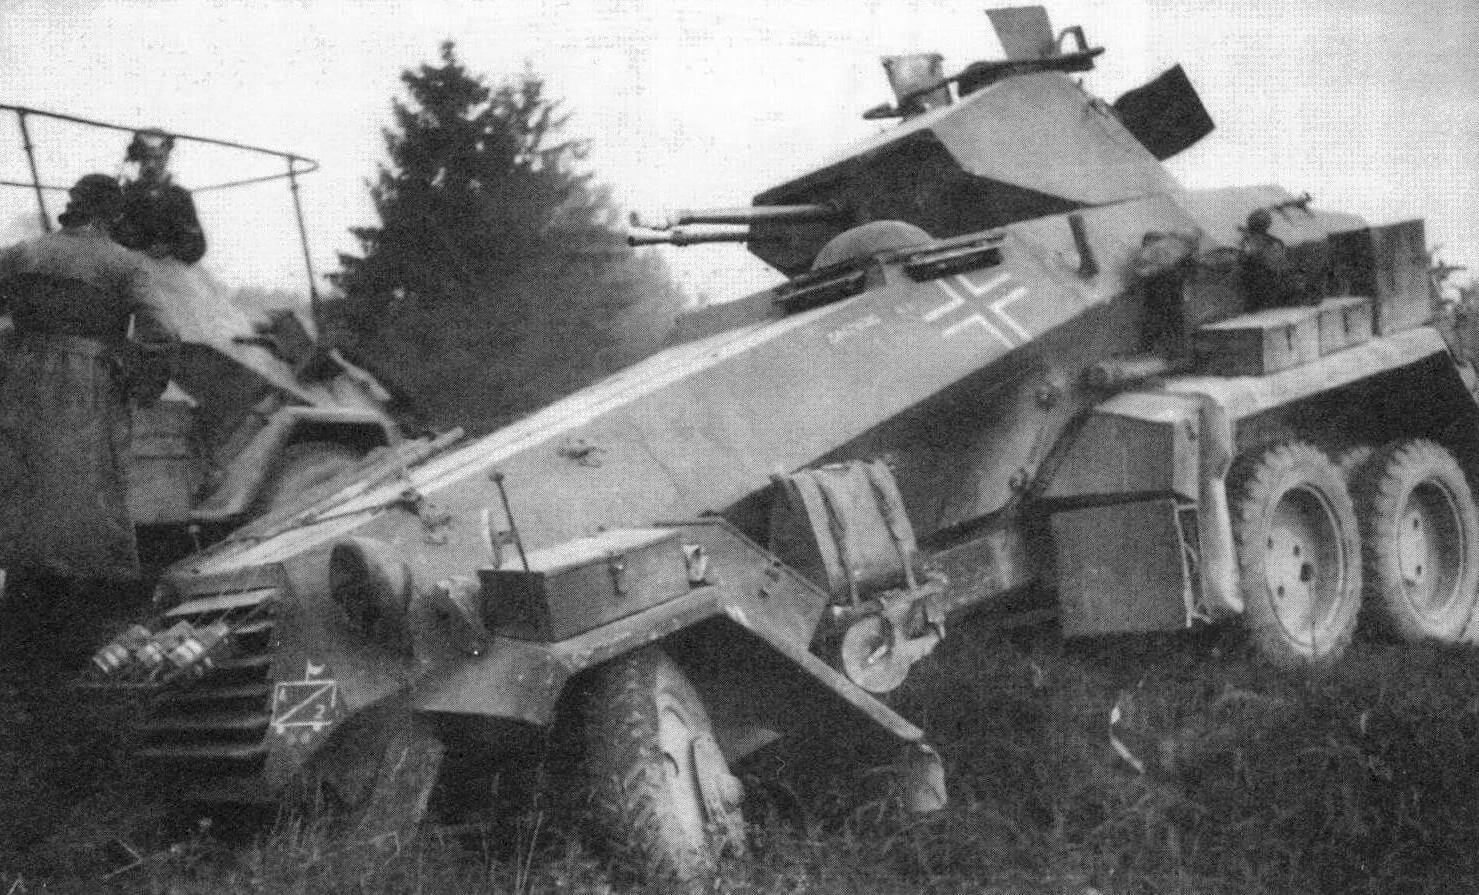 Бронеавтомобиль Sd.Kfz.231(6-Rad). Франция, 1940 год. На жалюзи радиатора укреплены дымовые шашки